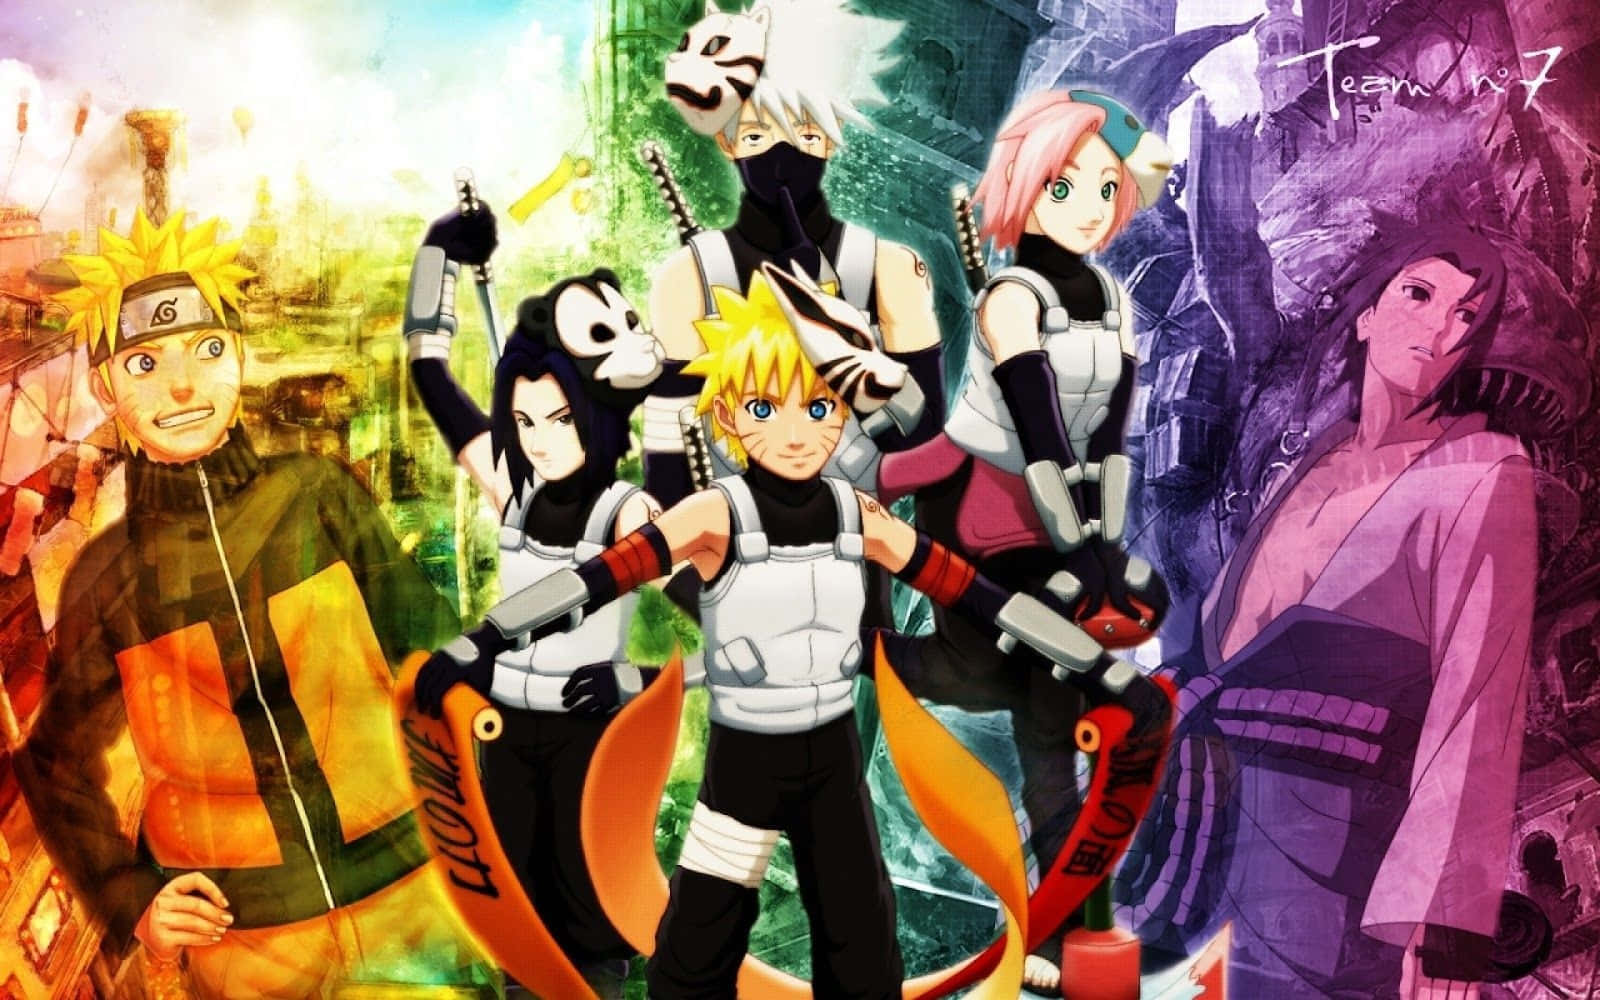 1. Alle medlemmer af Team 7 i Naruto Wallpaper